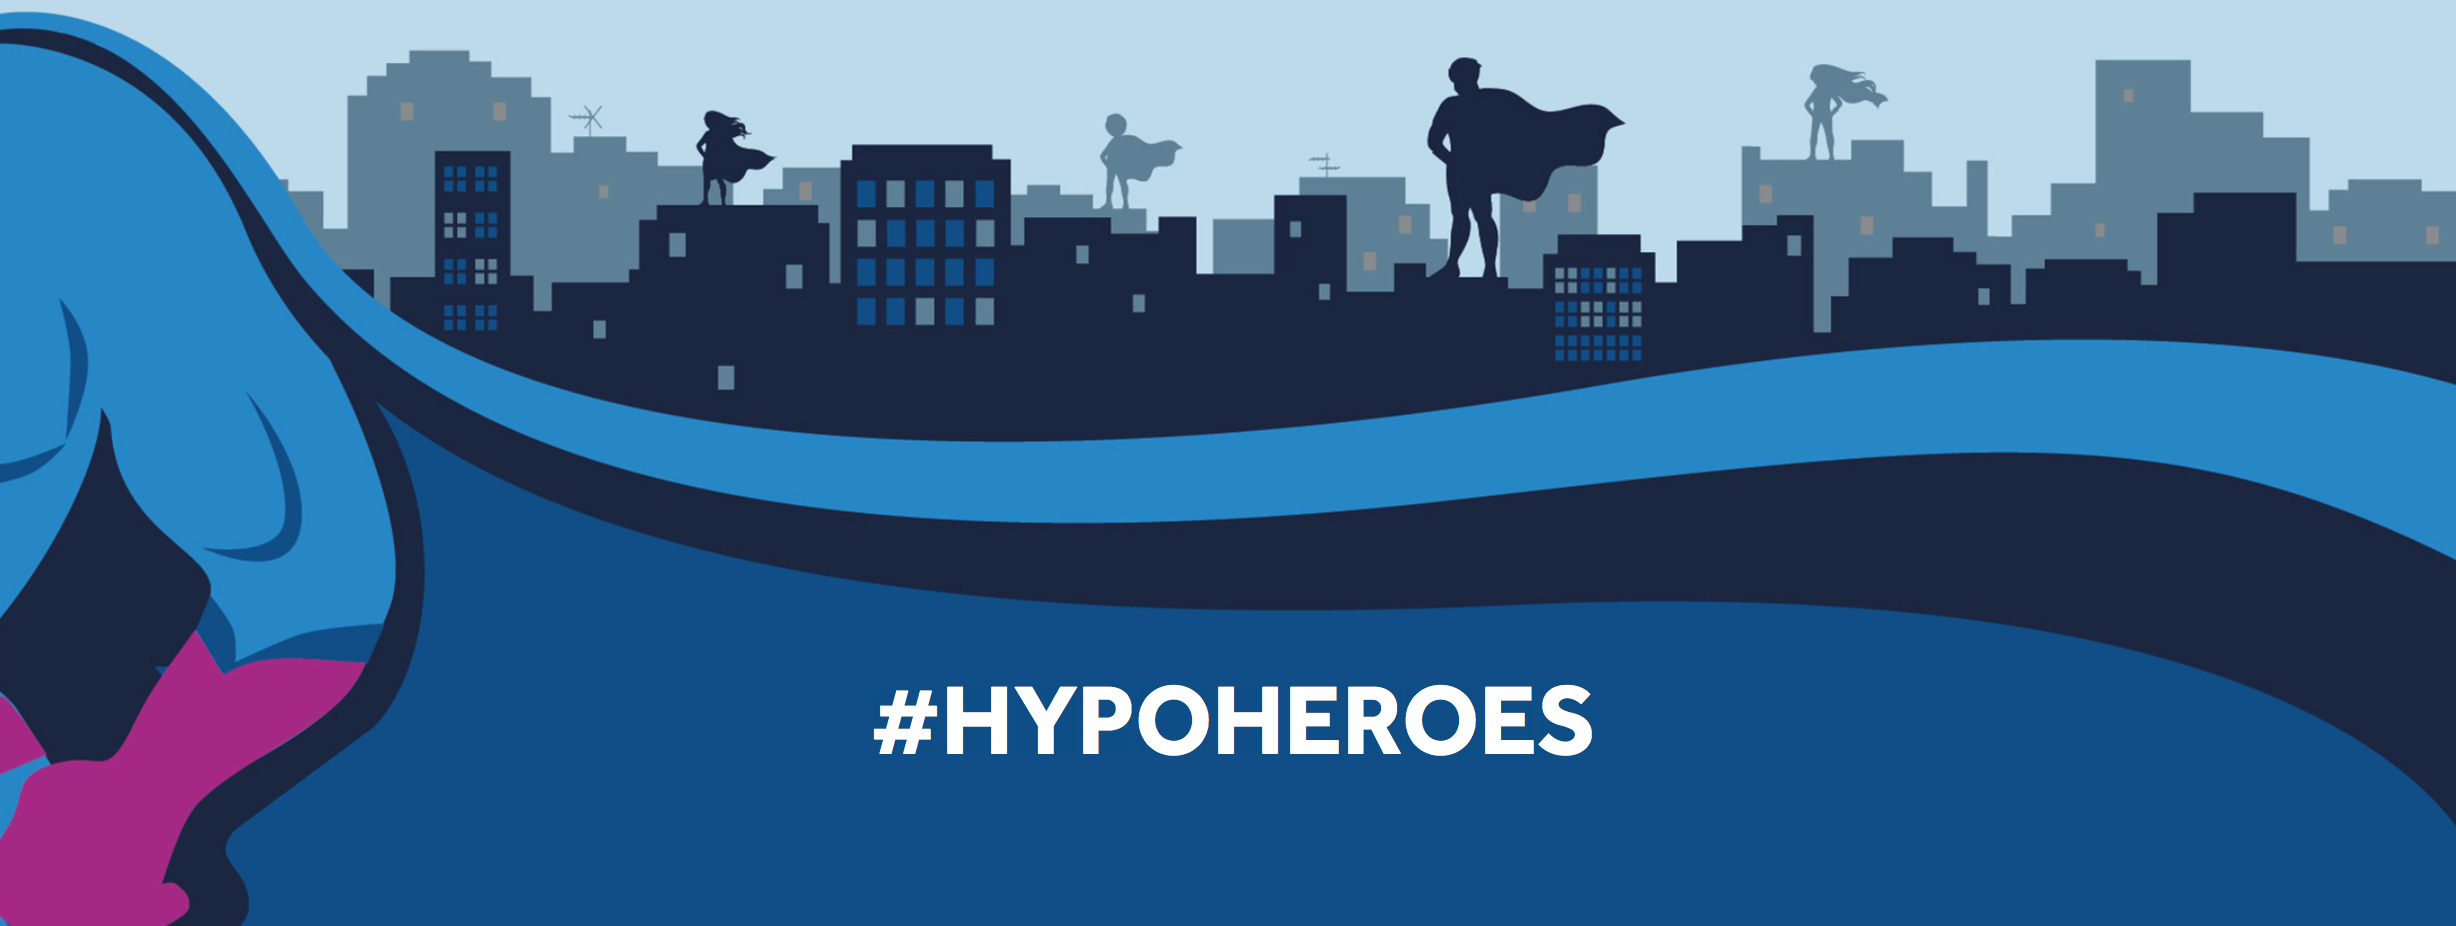 Nasce la community degli  #Hypoheroes di medtronic per sconfiggere l’ipoglicemia